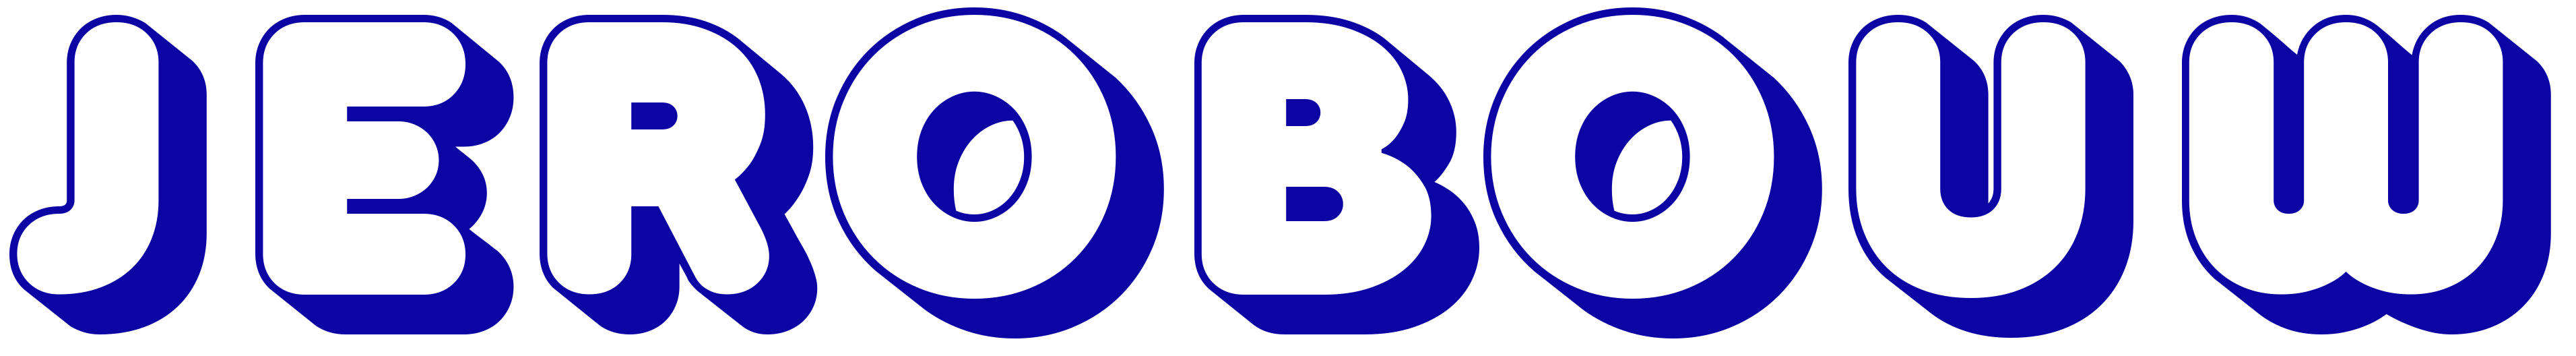 Jerobouw logo